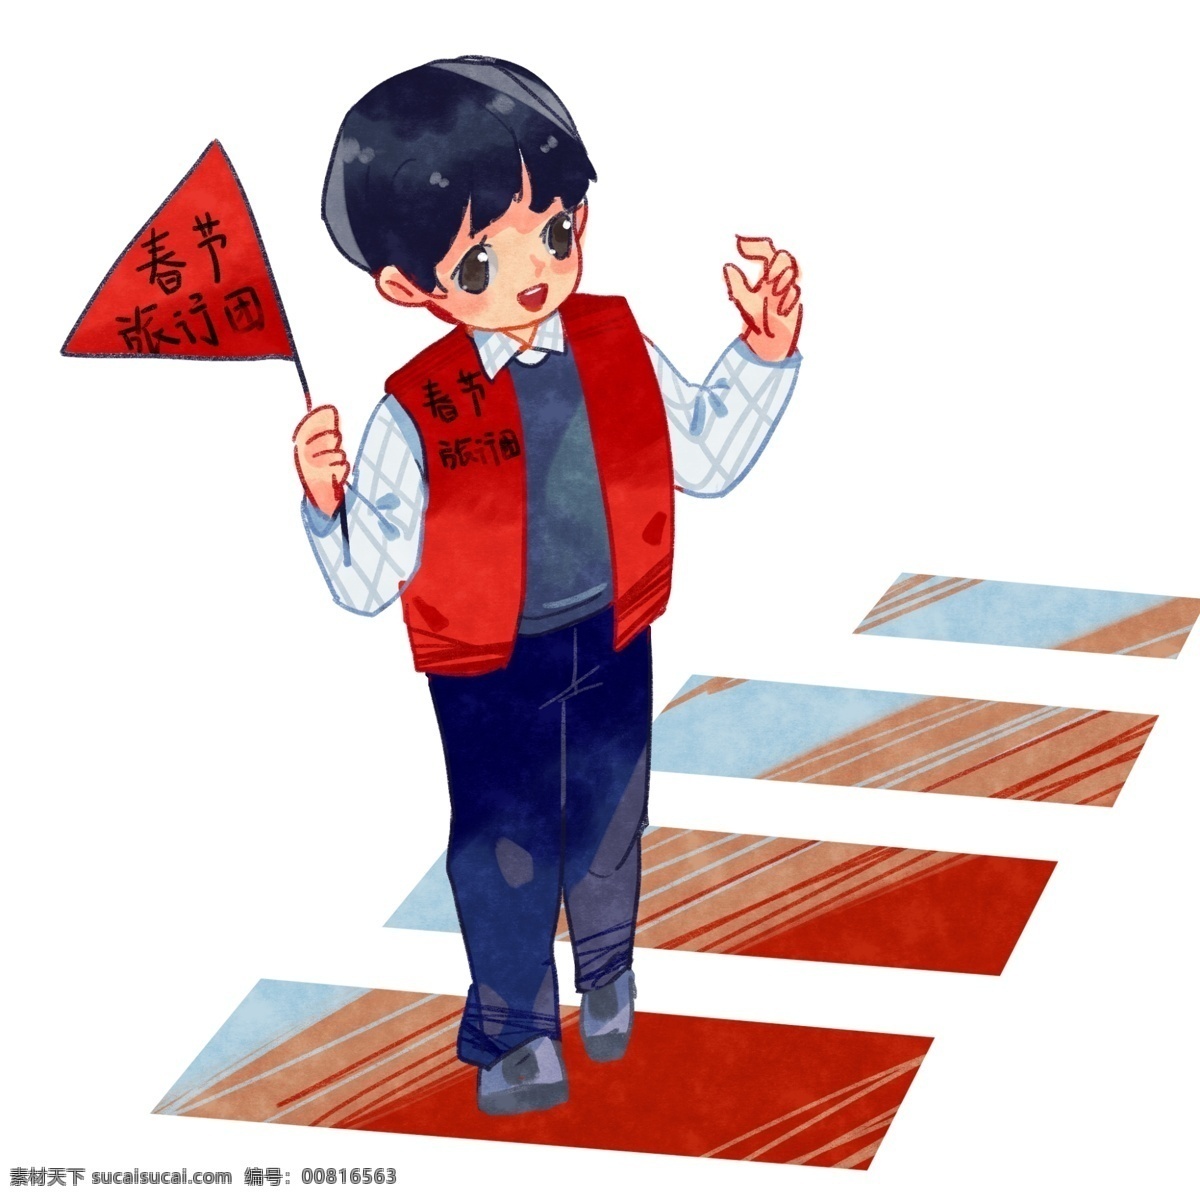 春节 旅行 男 导游 插画 卡通插画 手绘春节插画 创意旅行插画 可爱的孩子 红色的小旗 旅行的导游